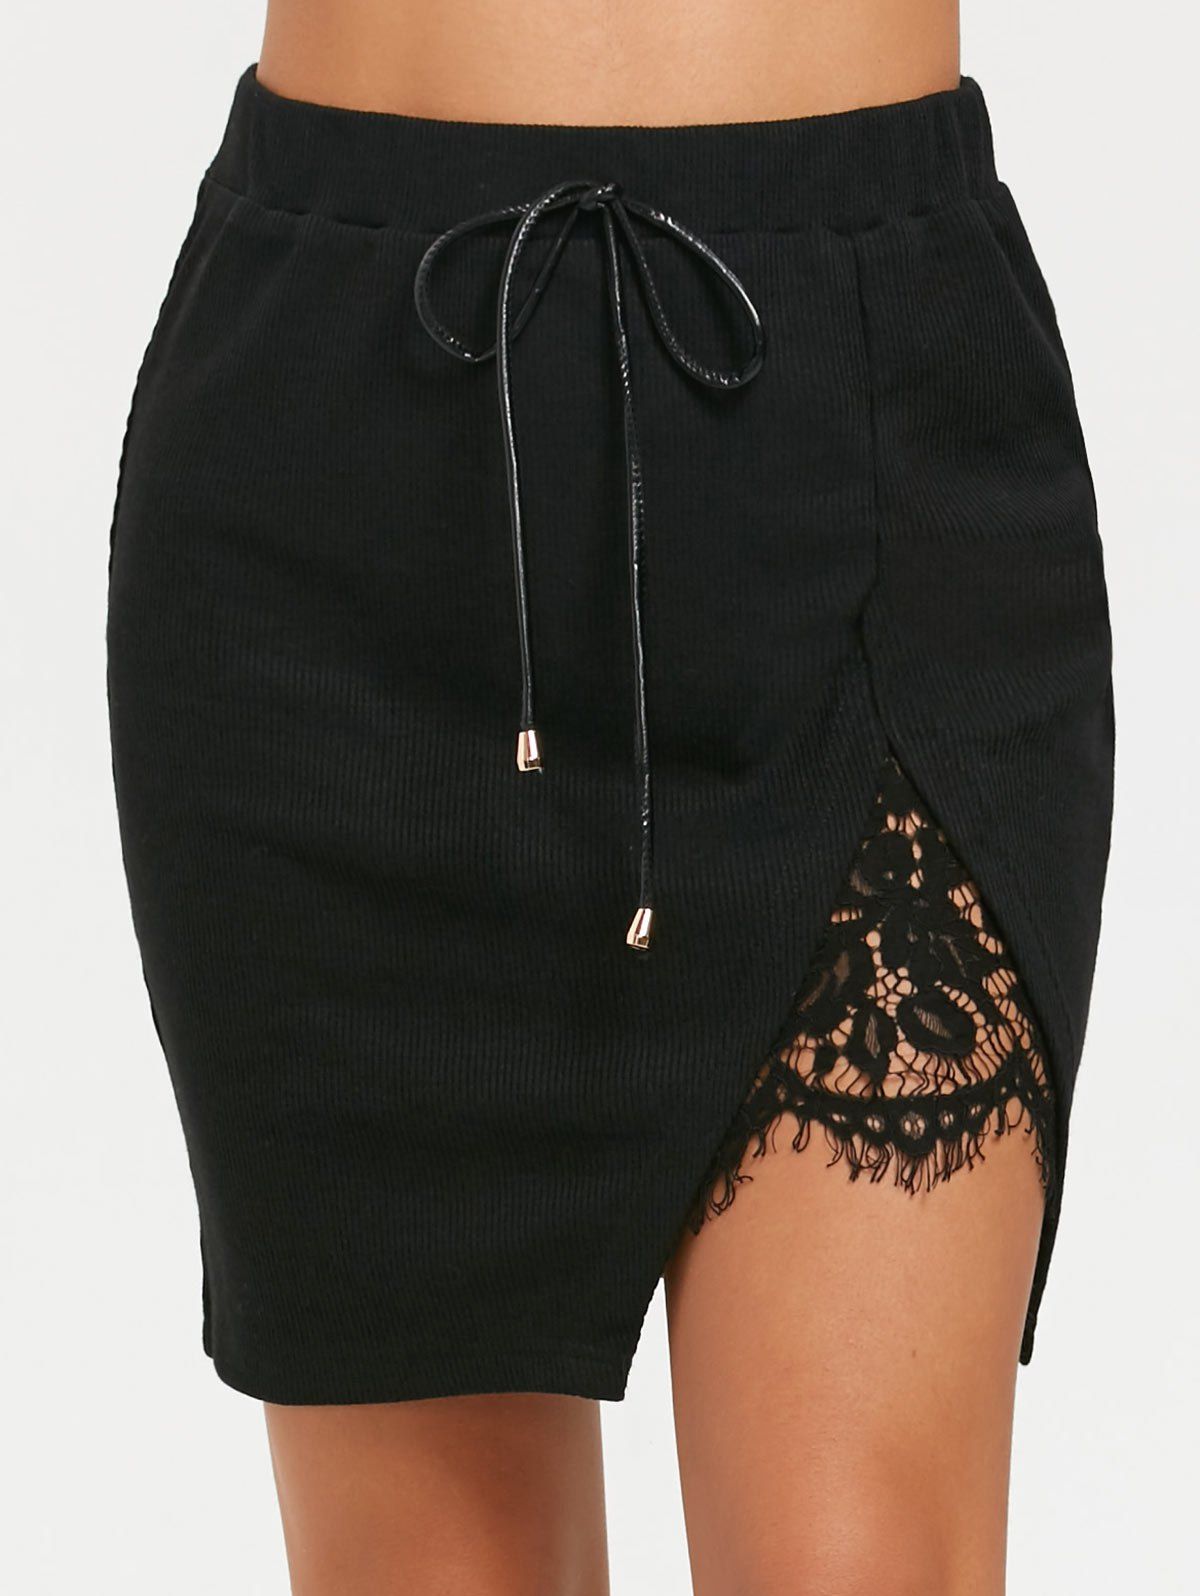 Split Lace Panel High Waist Short Skirt - BLACK S